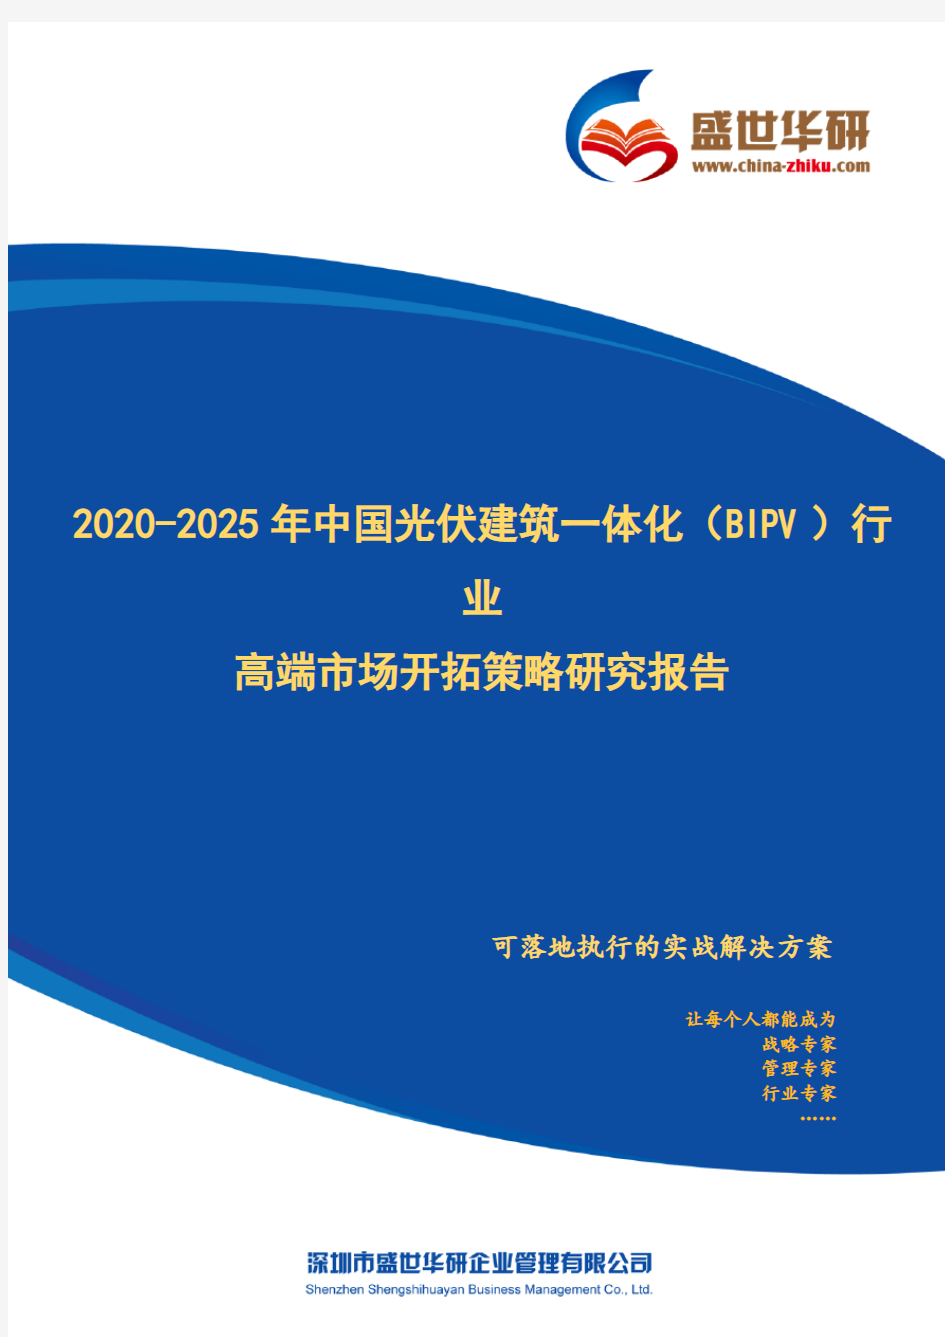 【完整版】2020-2025年中国光伏建筑一体化(BIPV)行业高端市场开拓策略研究报告